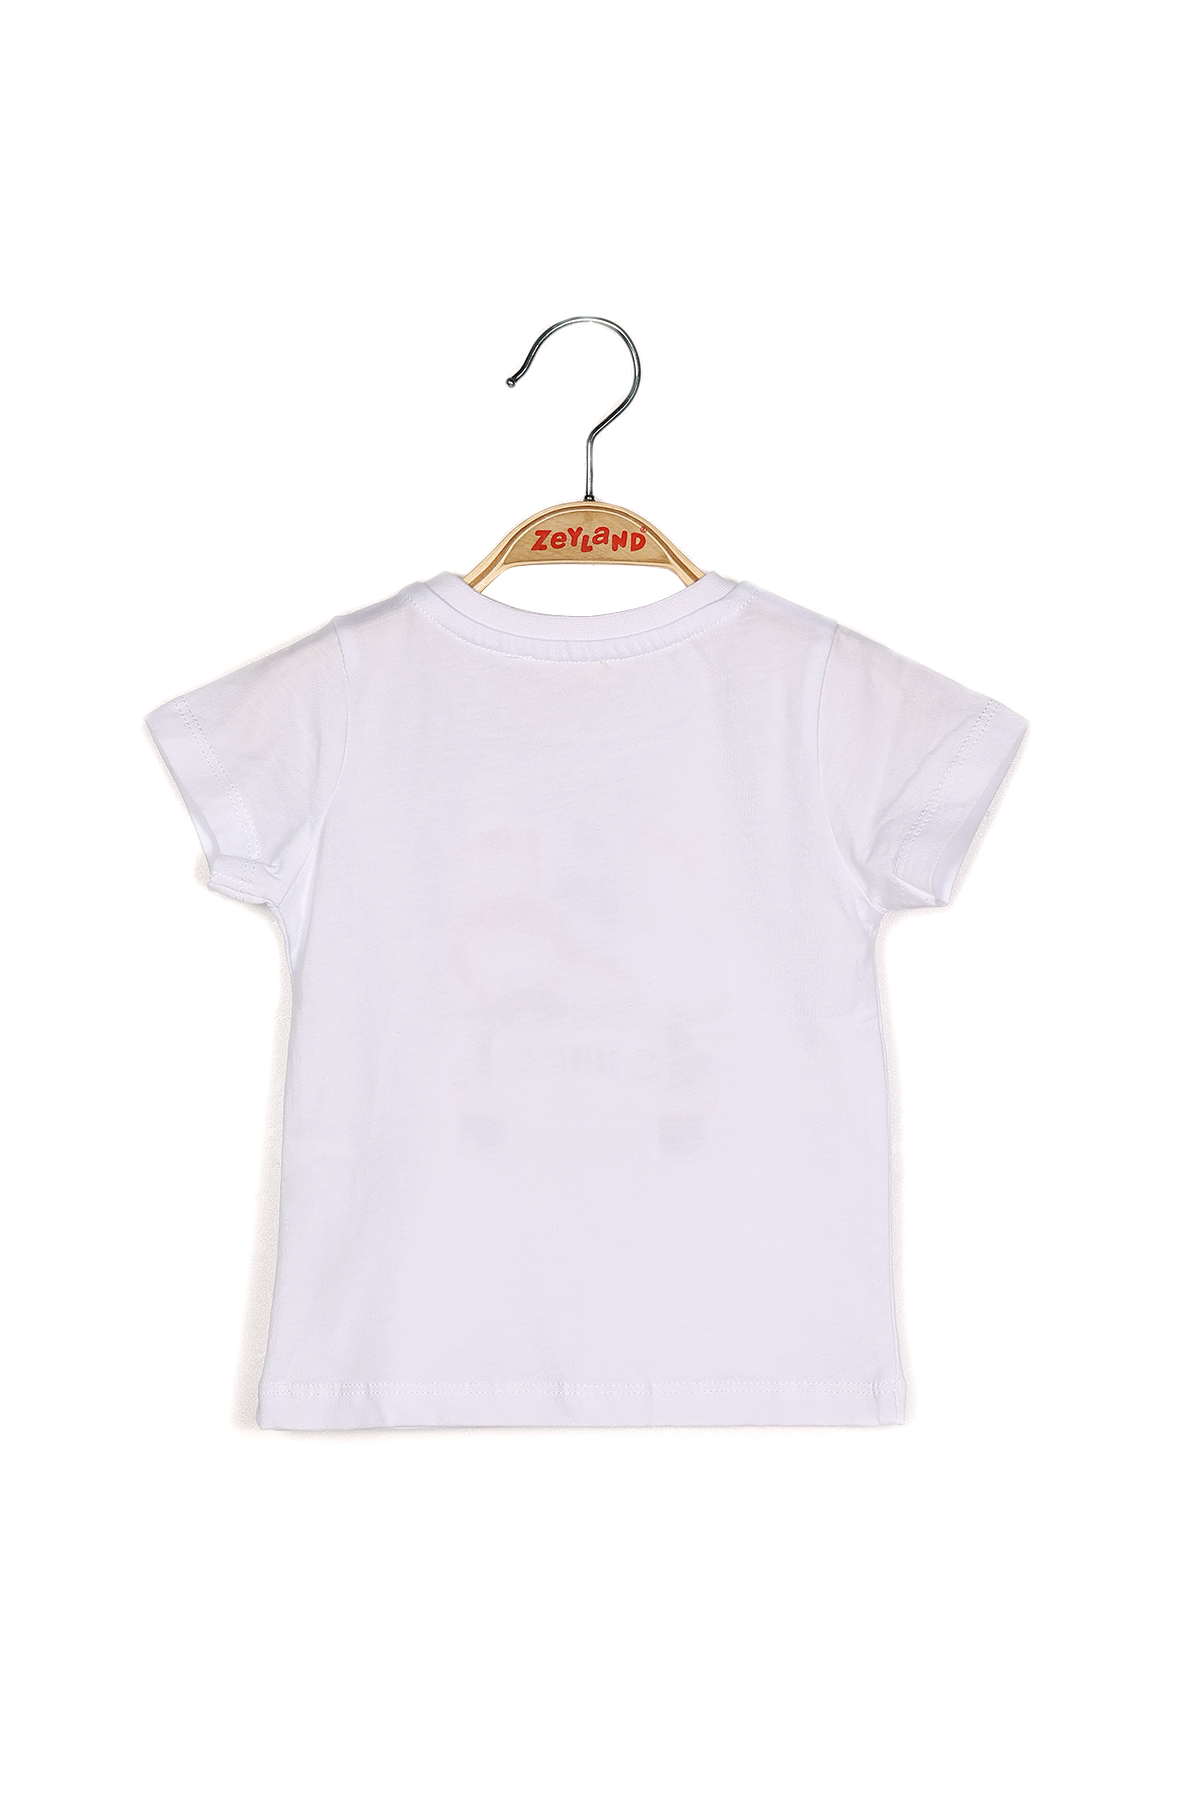 ZEYLAND Erkek Bebek Baskılı Beyaz T-shirt